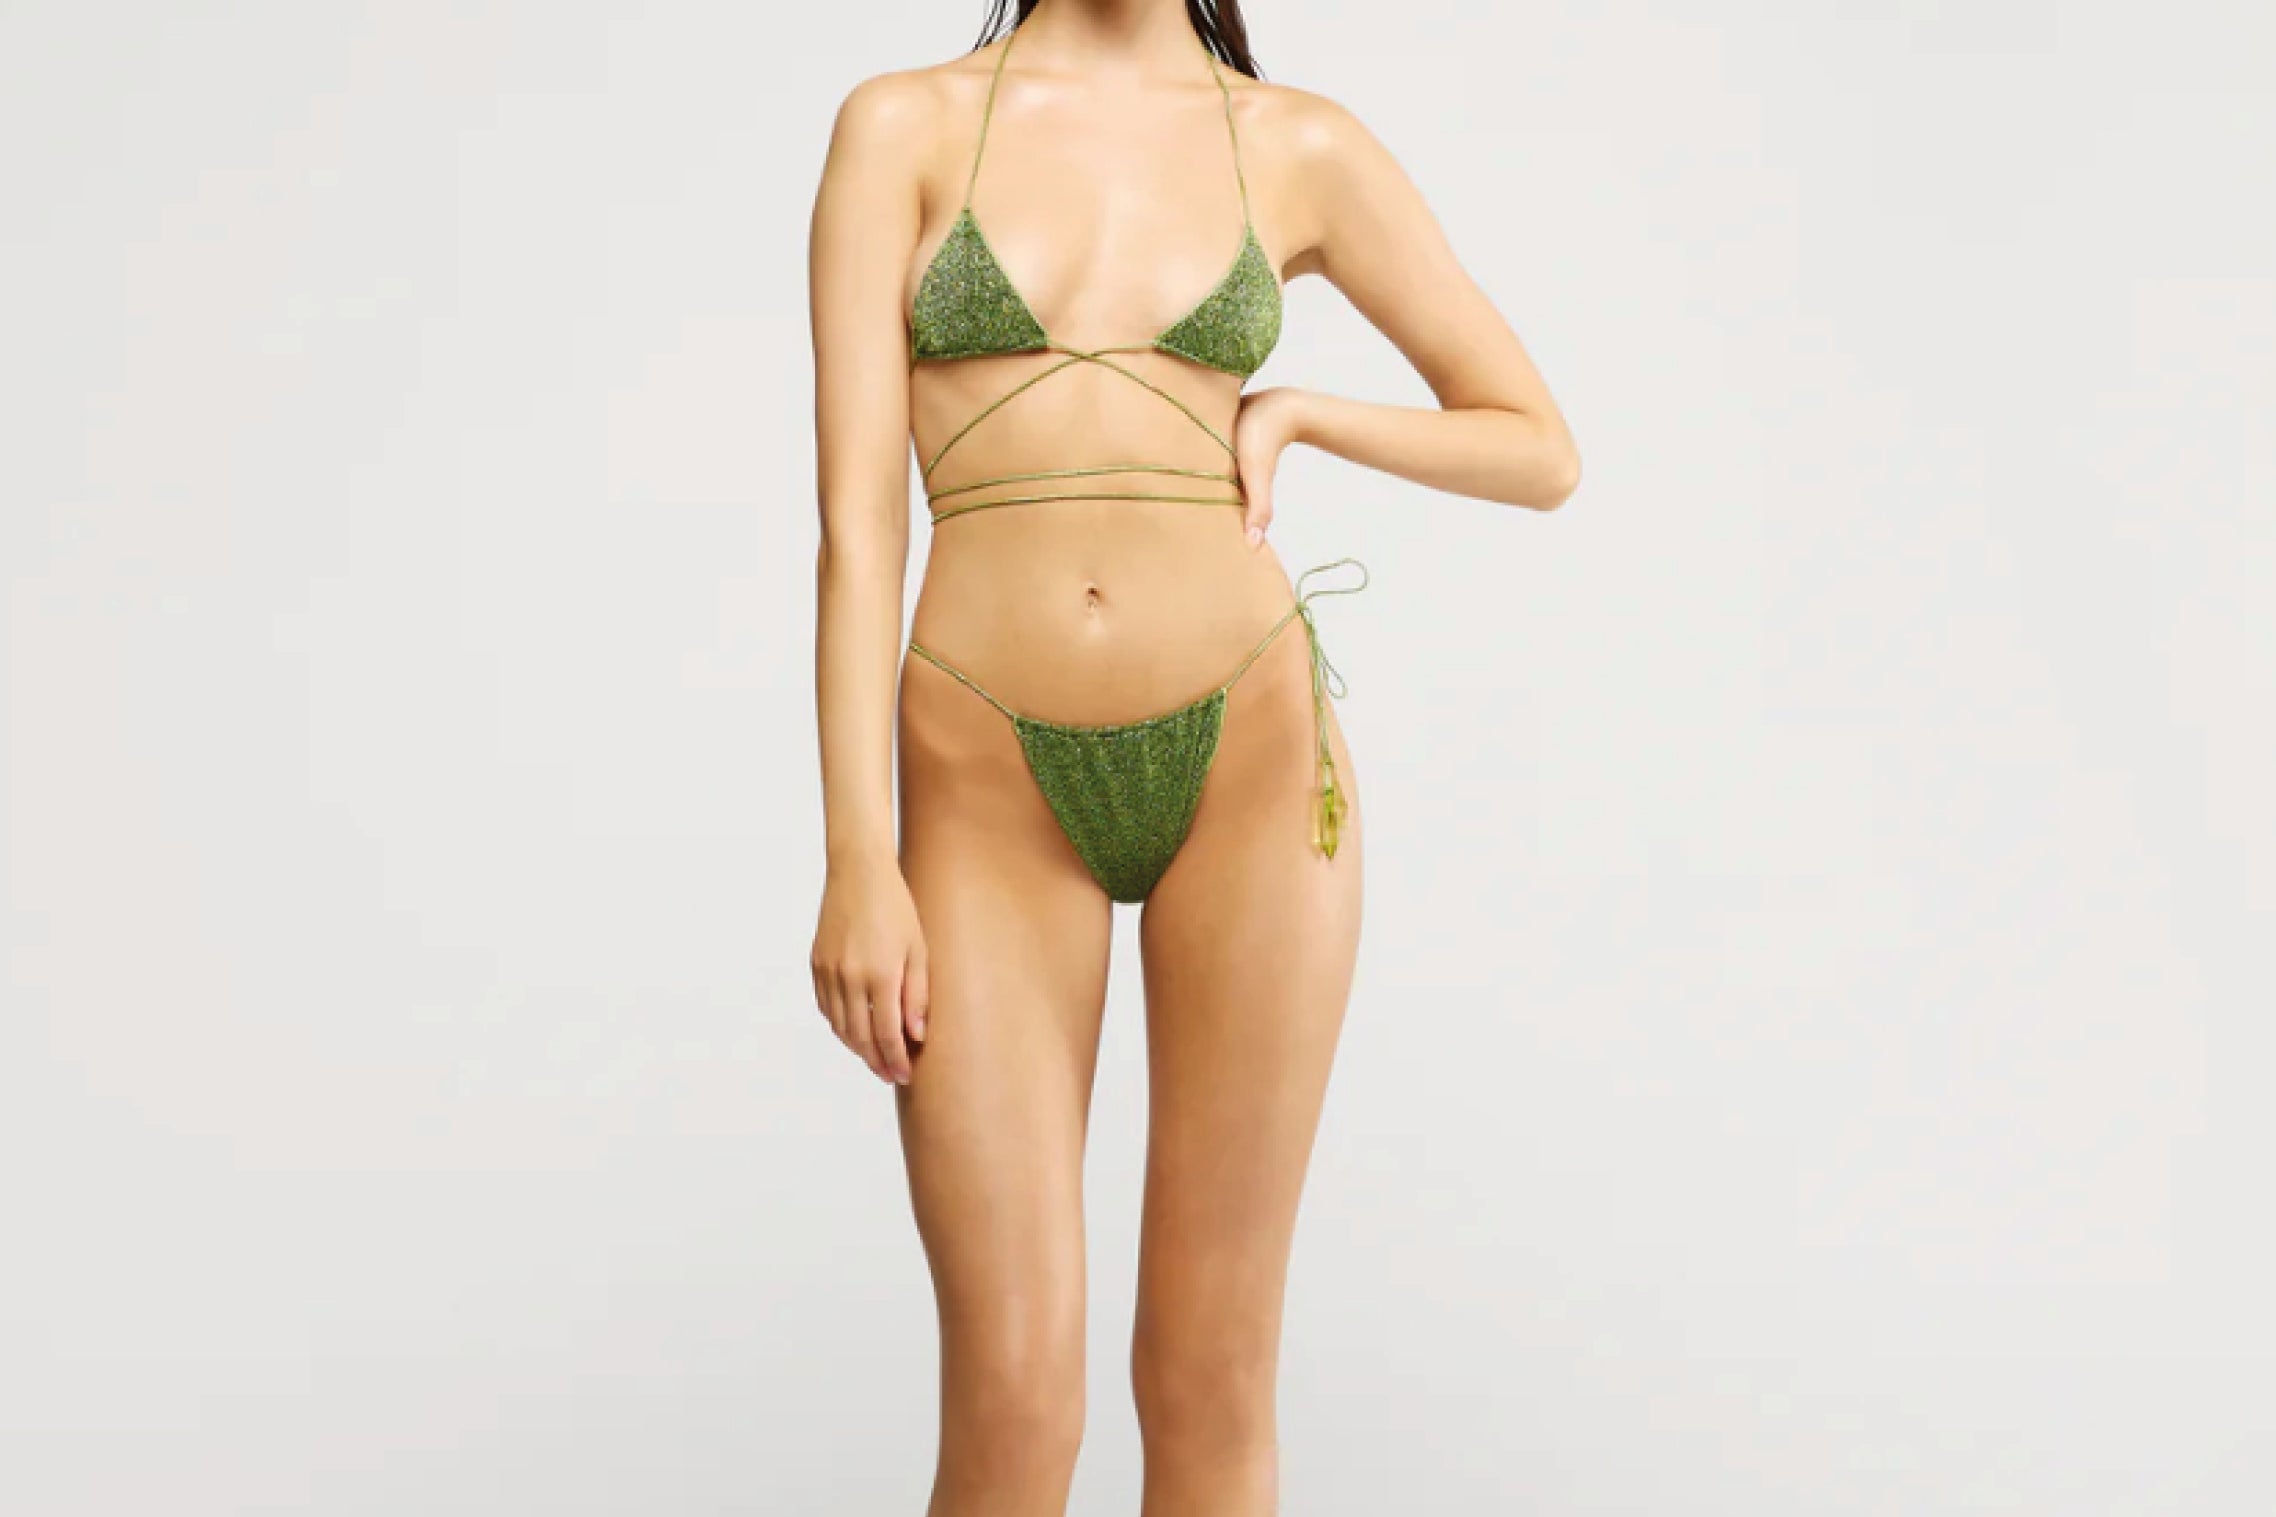 Bikini Oserée en color verde y purpurina con forma de triángulo y braguita a conjunto talle alto. Envíos gratuitos a partir de 200€. Devoluciones fáciles.